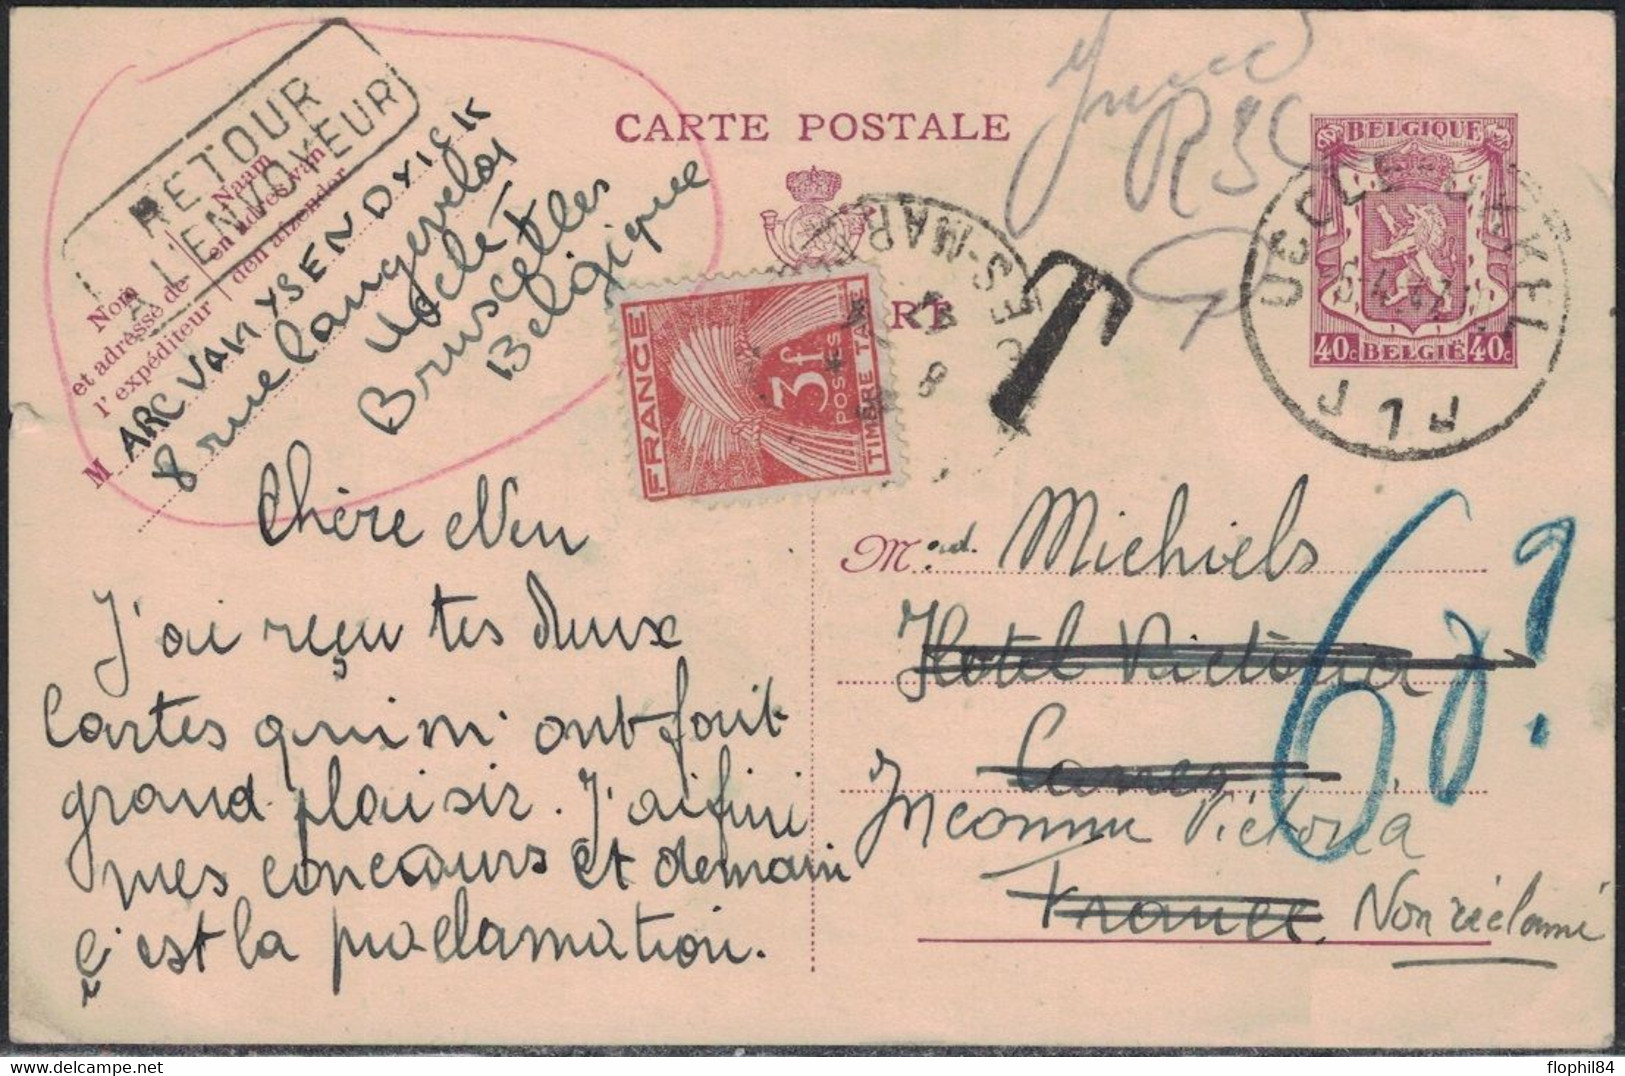 BELGIQUE - ENTIER POSTAL POUR LA FRANCE - TAXE GERBE 3F - RETOUR ENVOYEUR - NON RECLAME. - 1960-.... Storia Postale